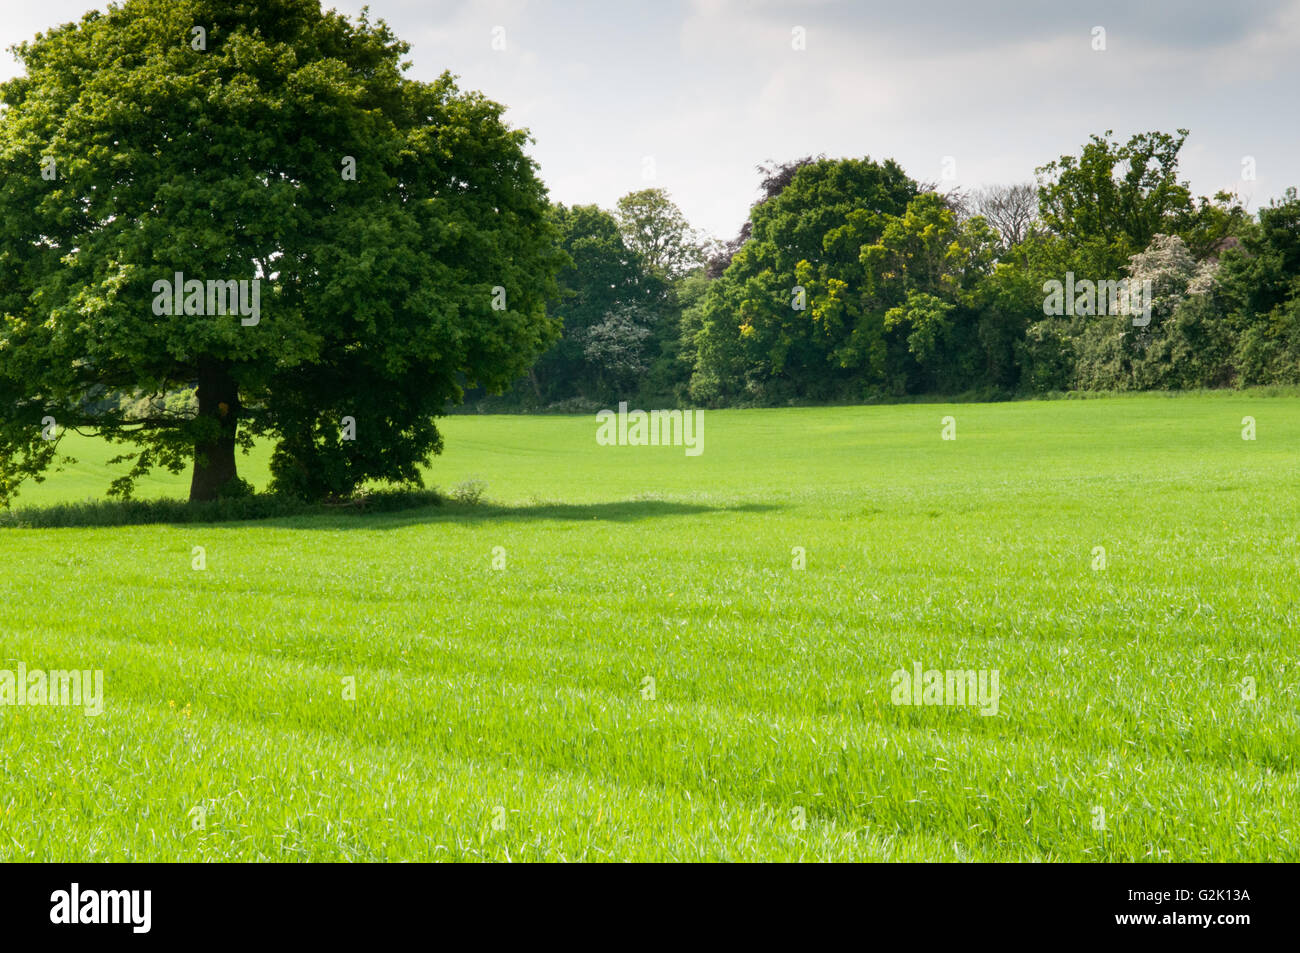 Meadow landscape of a single tree in a grassy field in summer Stock Photo